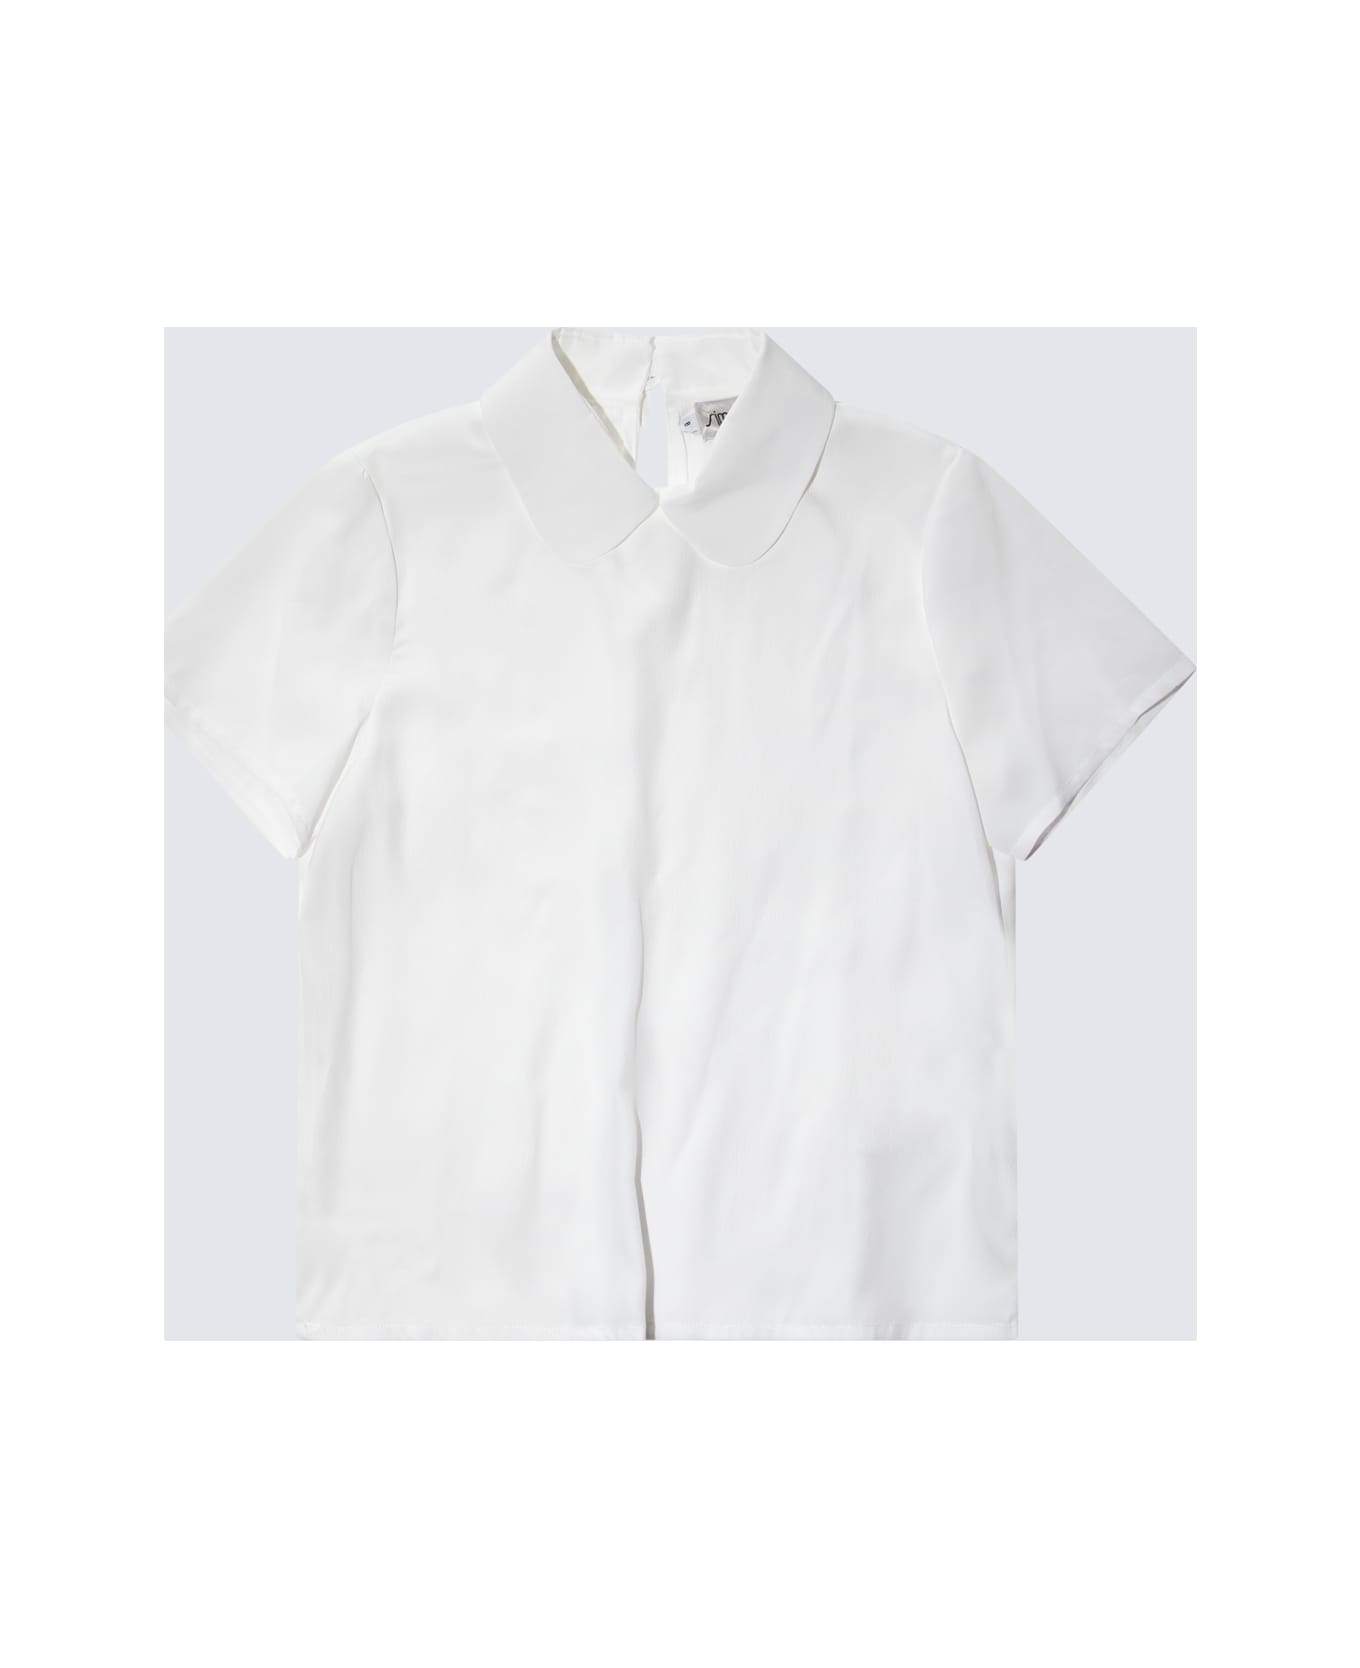 Simonetta White Shirt - White